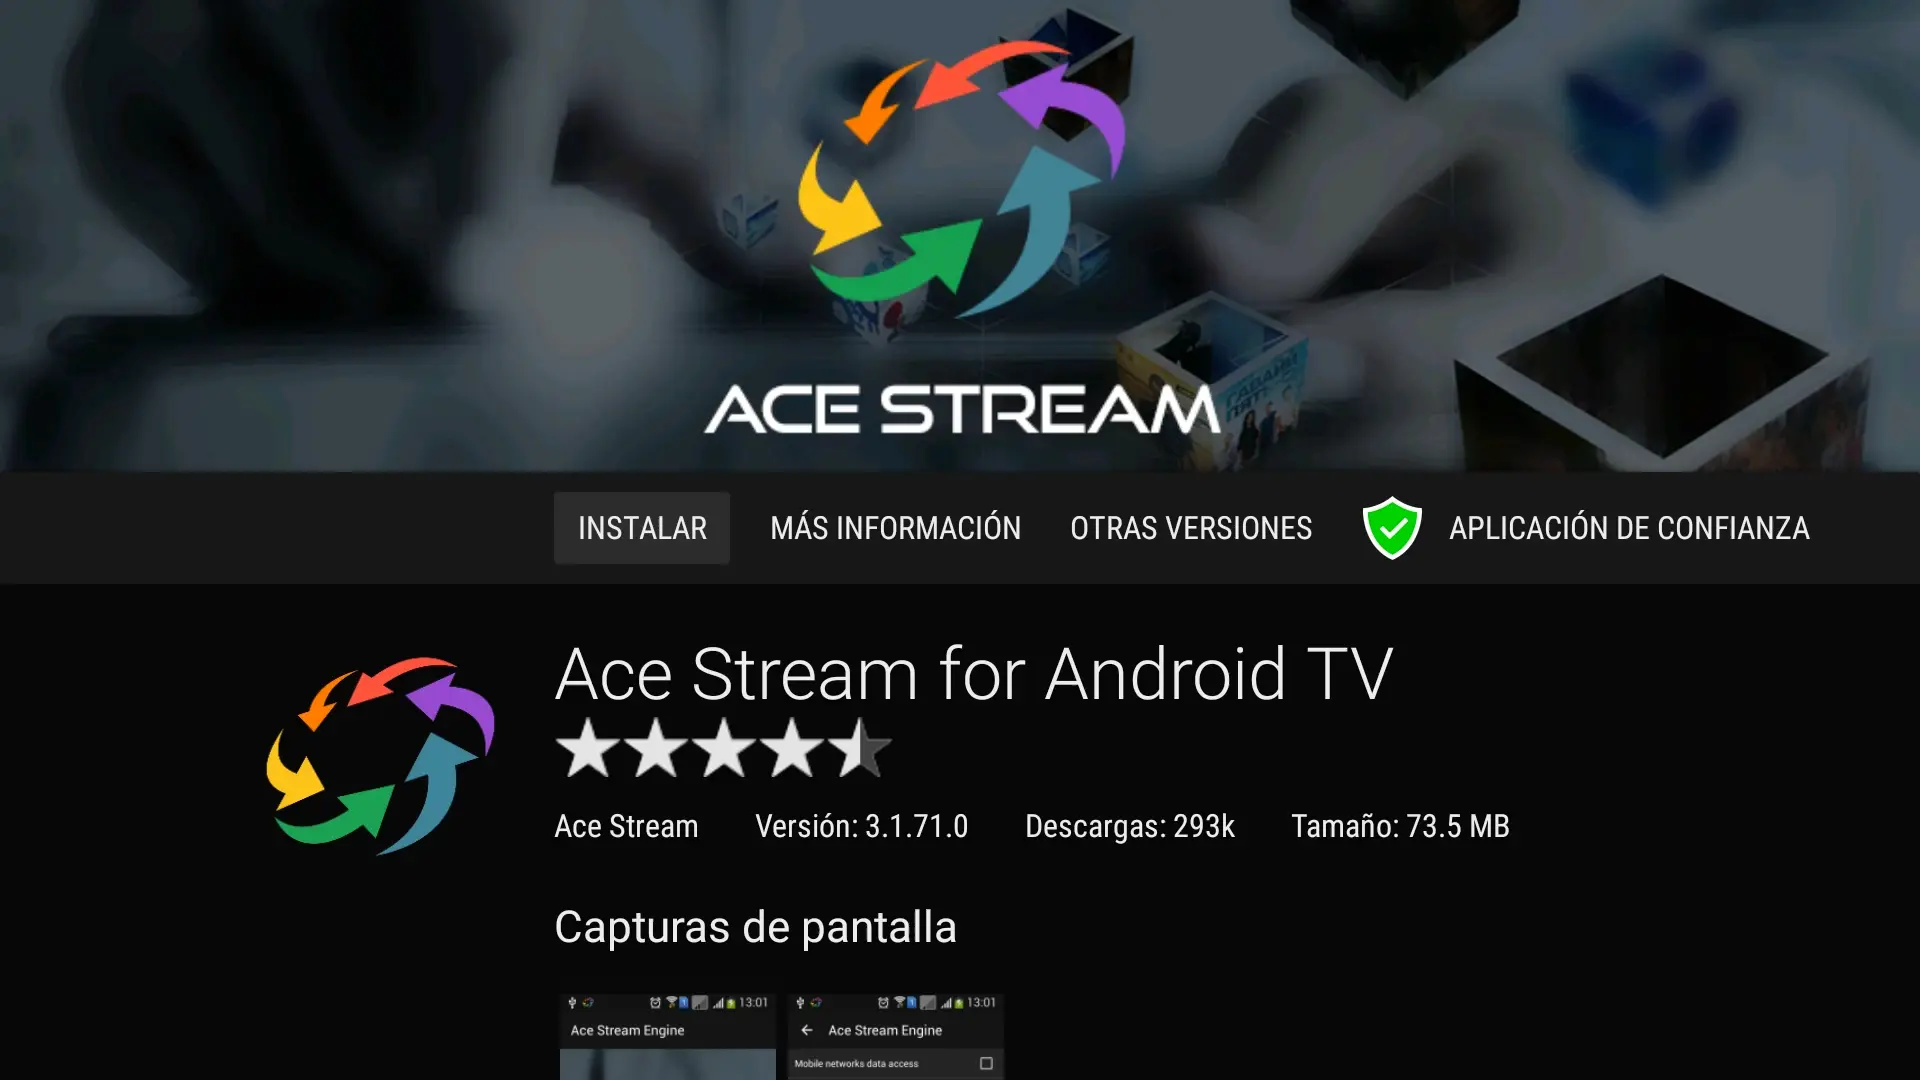 10 Pantalla de instalación del ACE STREAM for Android TV en la app Aptoide TV del Fire TV Stick